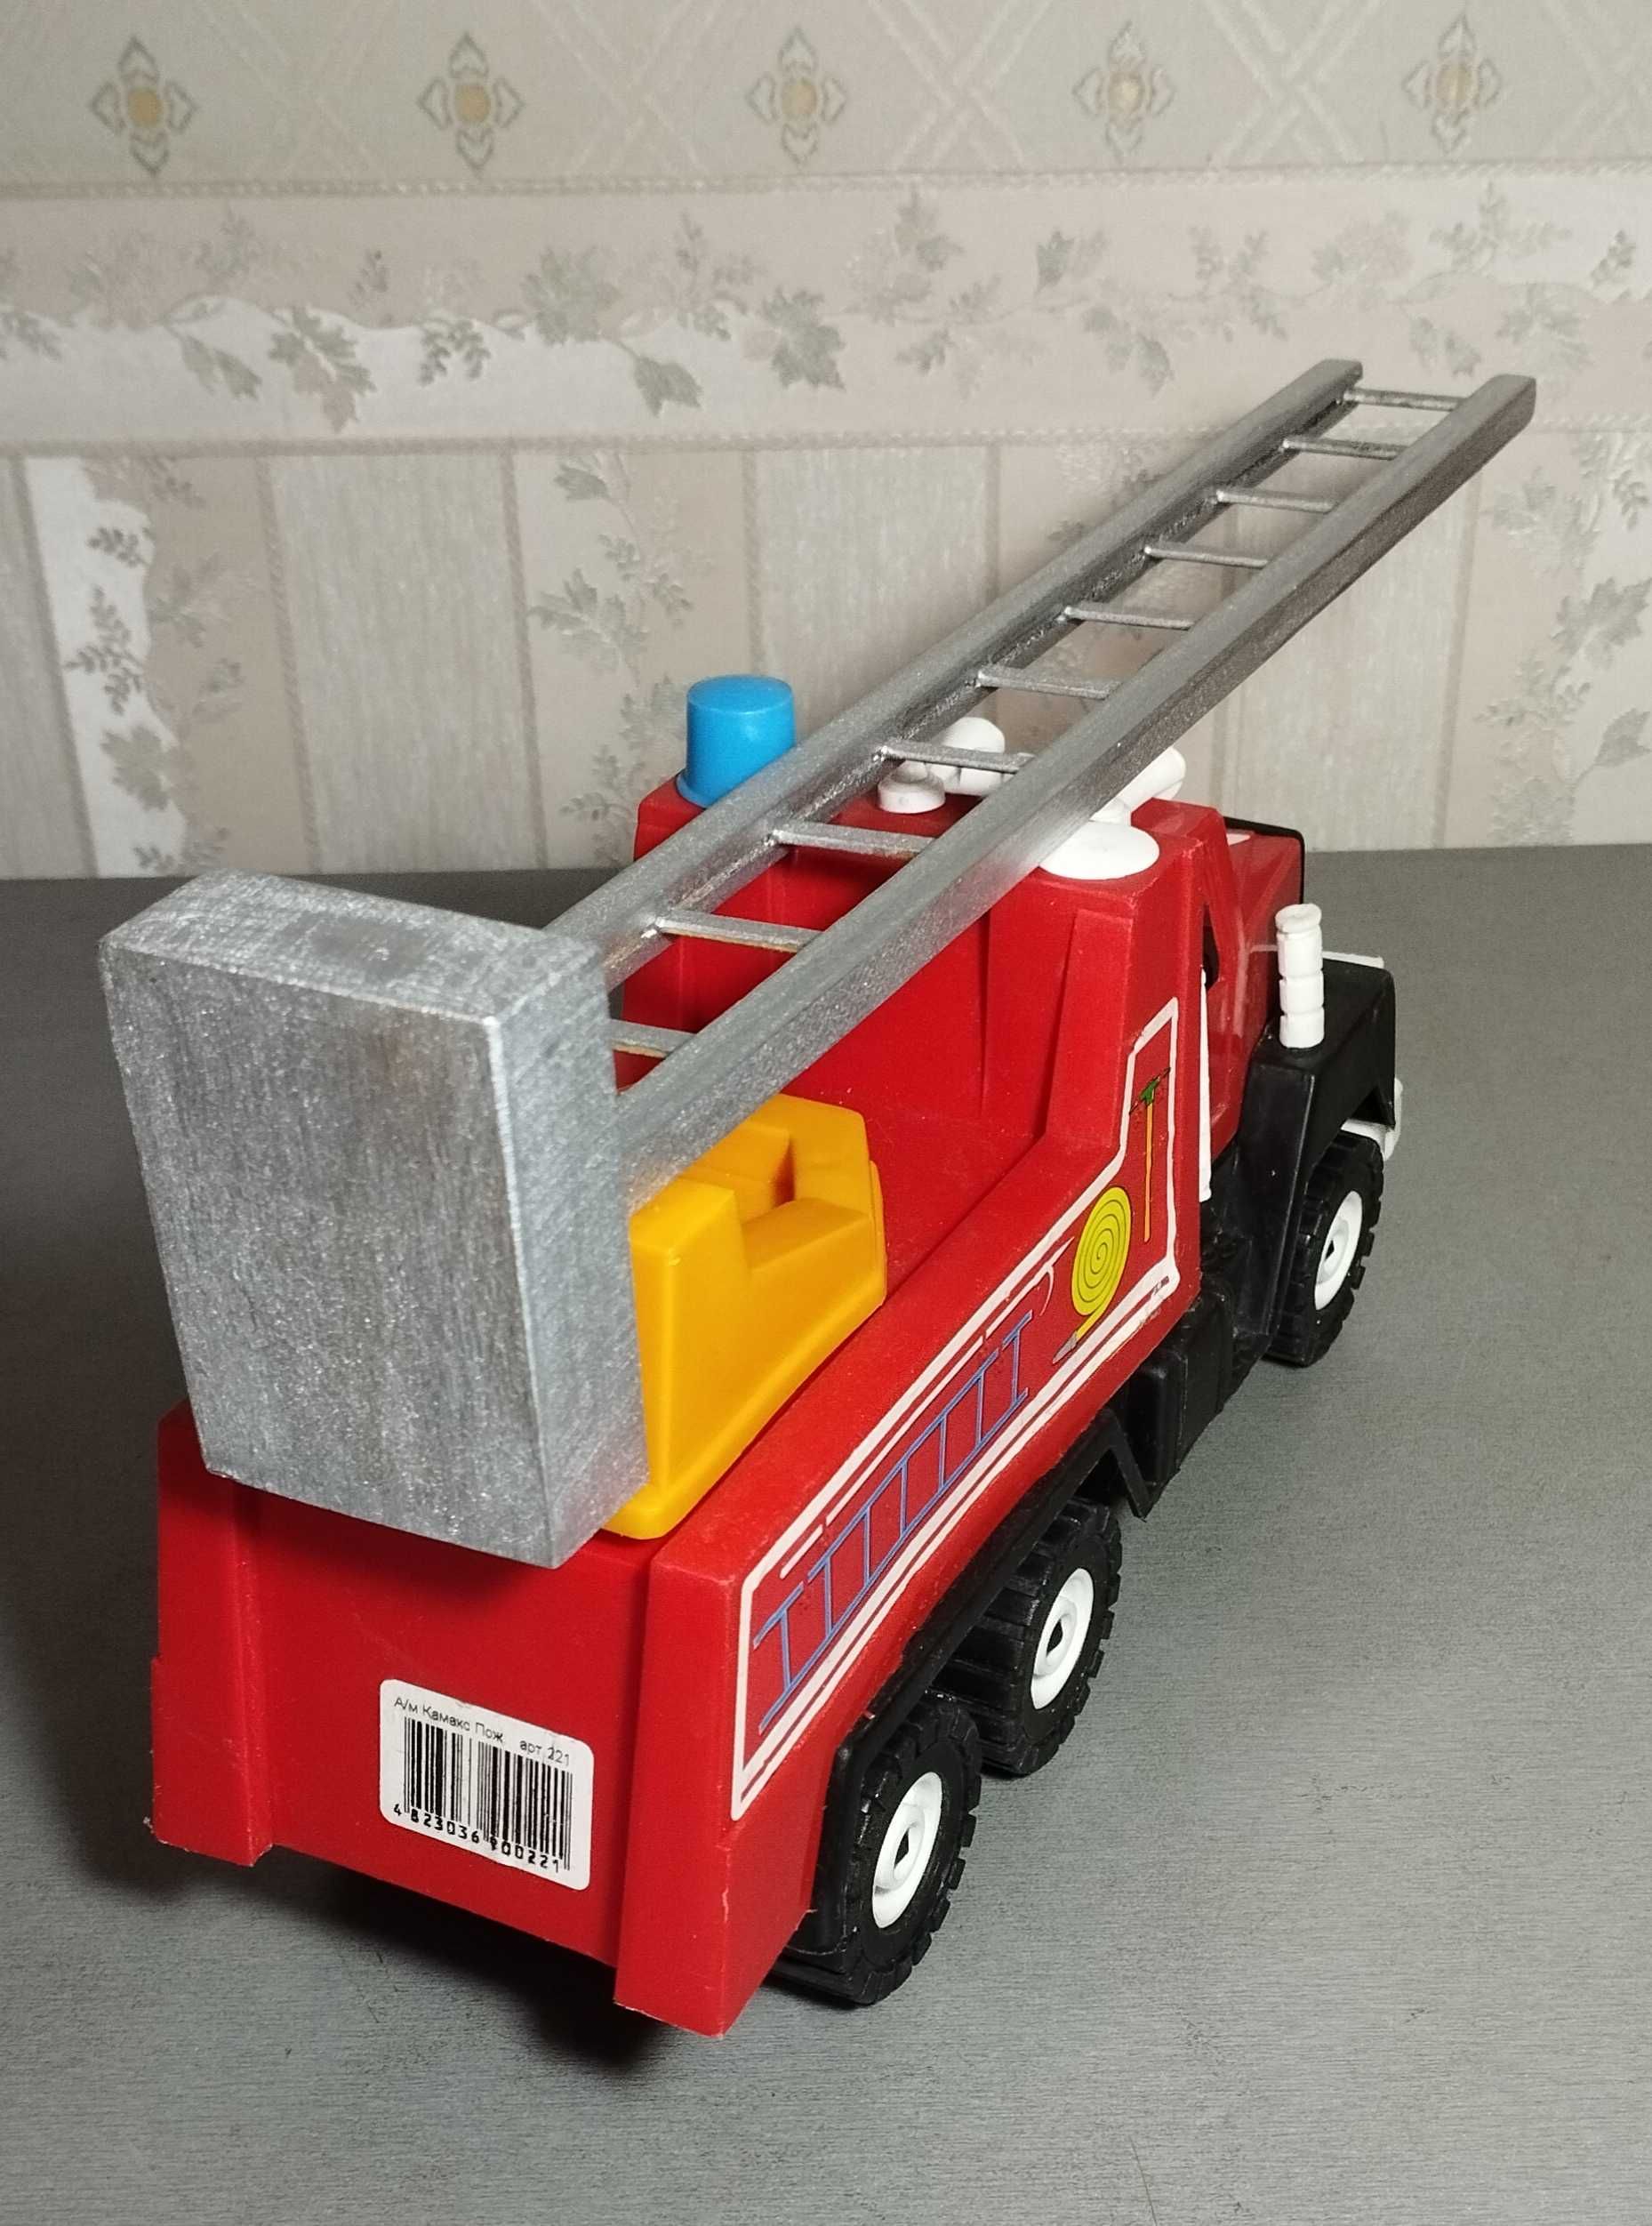 Большая игрушка Пожарная машина со съемной лестницей, красивая, целая